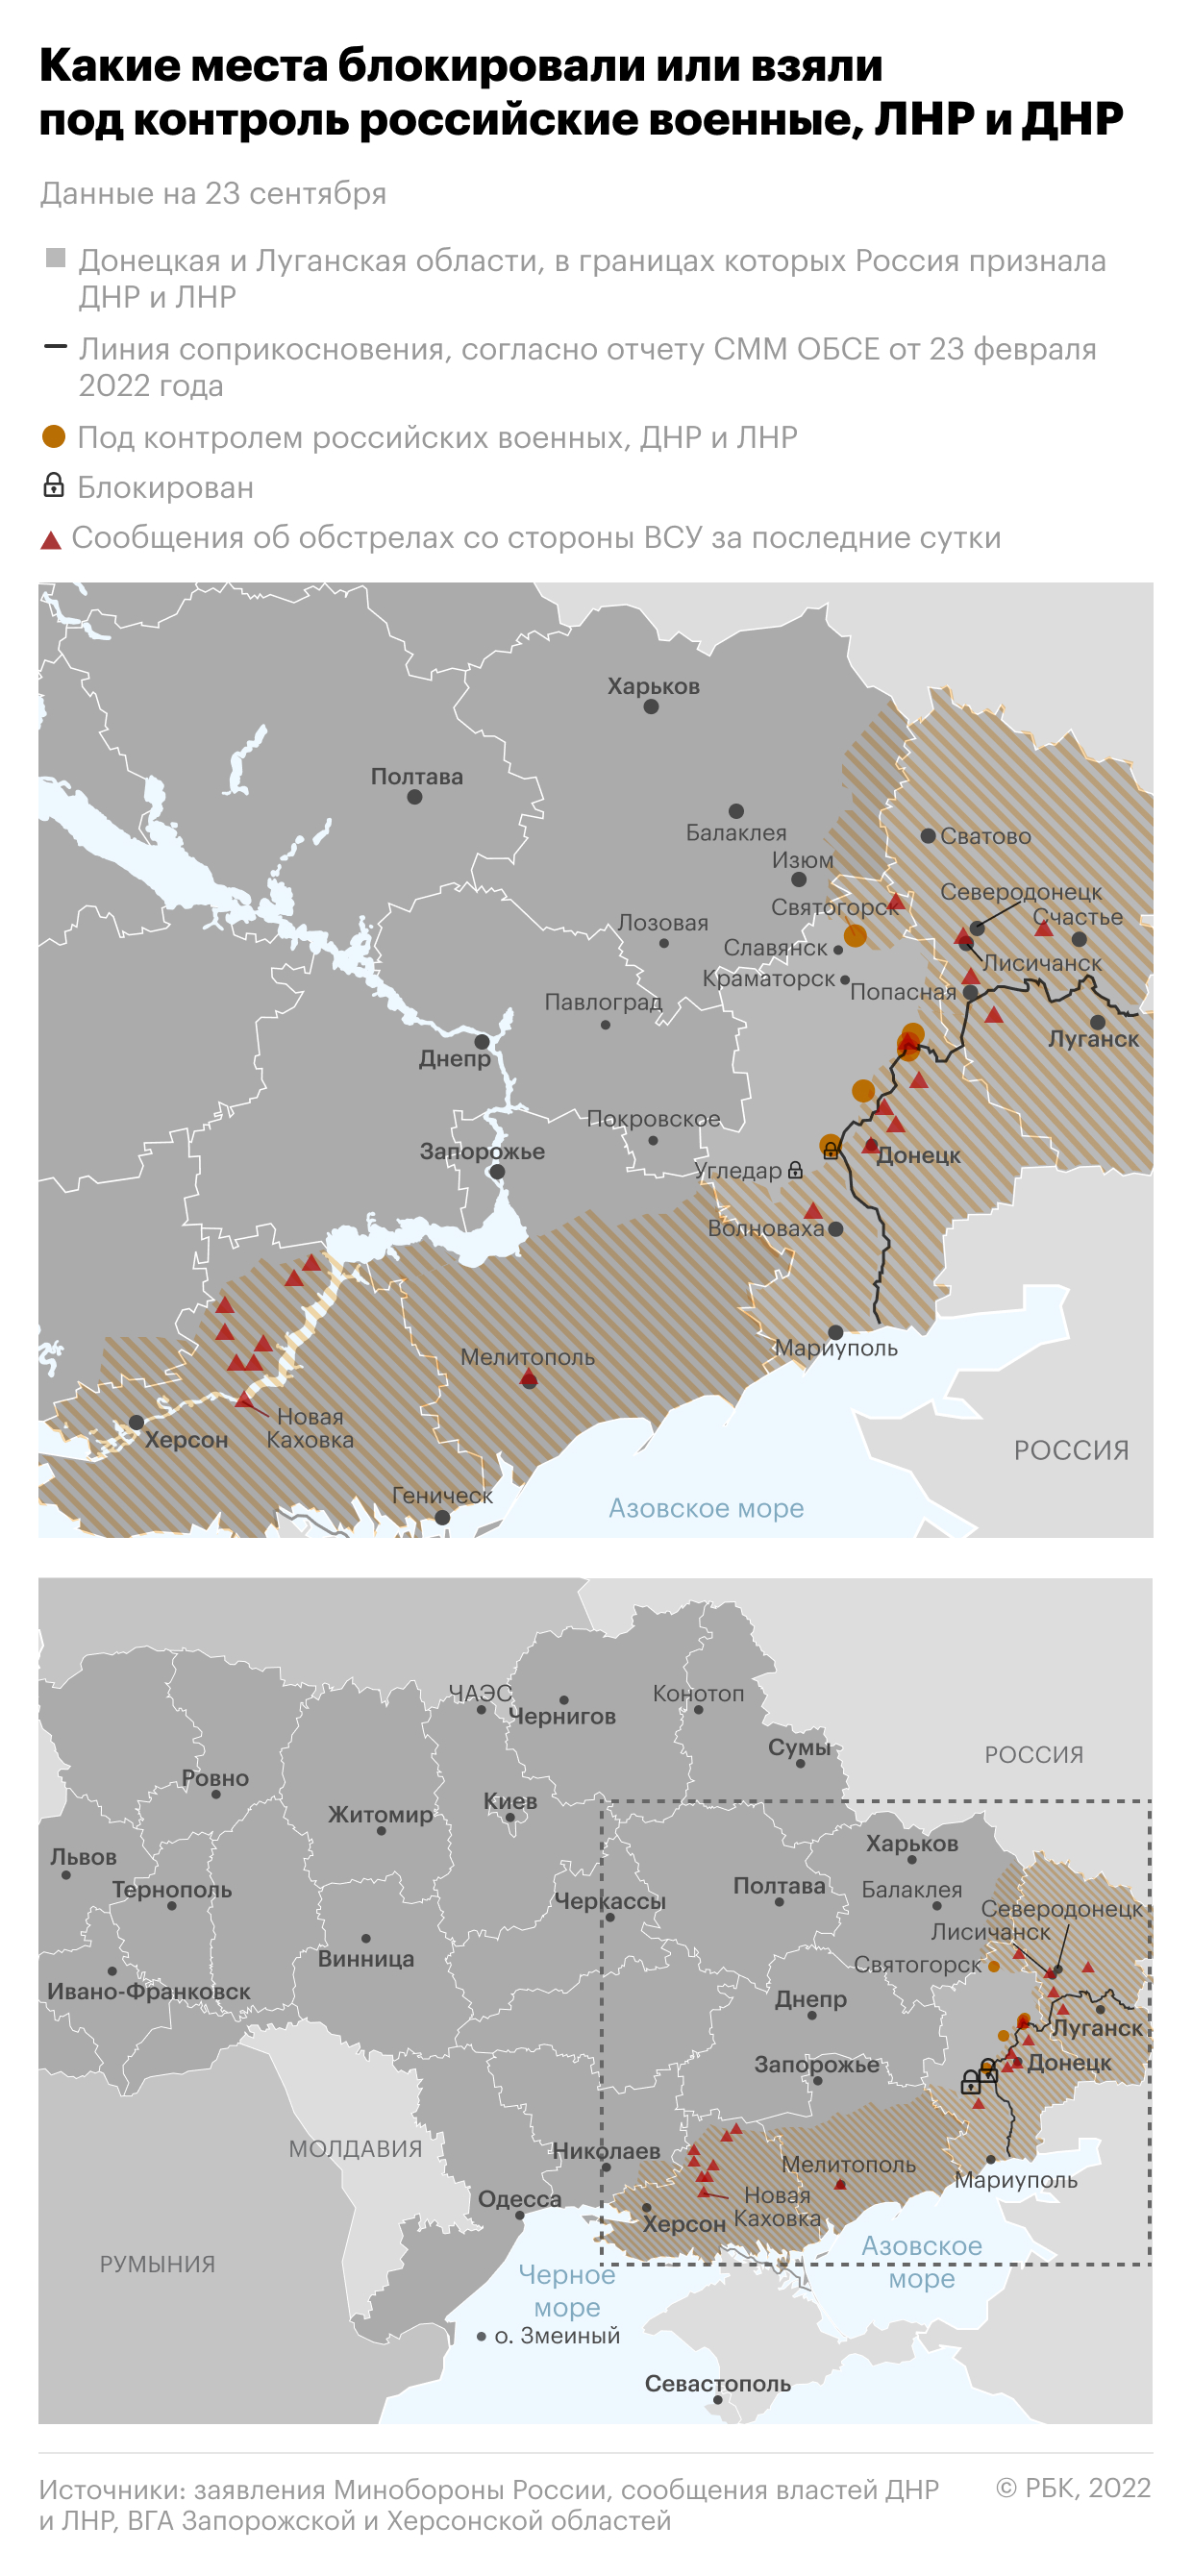 Что известно о регионах, где идут референдумы о присоединении к России"/>













